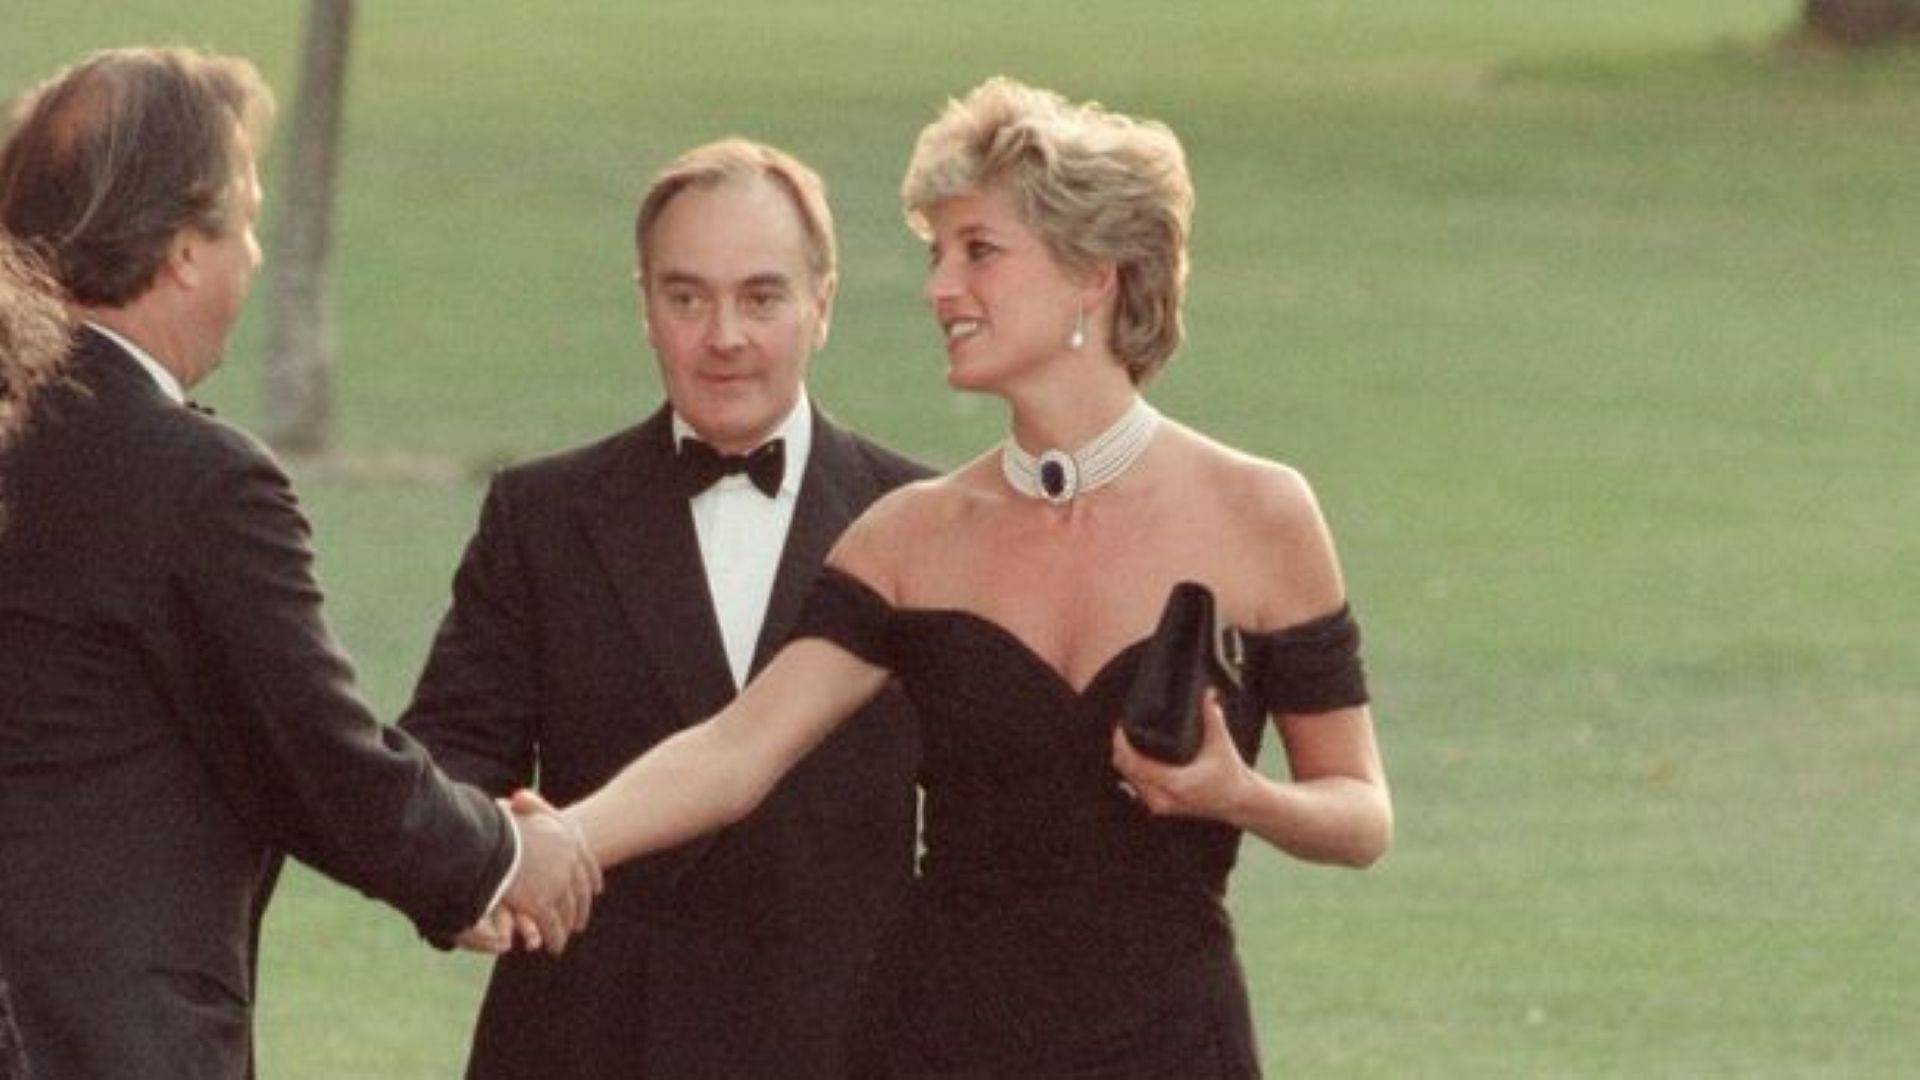 Princess Diana in her revenge dress (Image via AP)